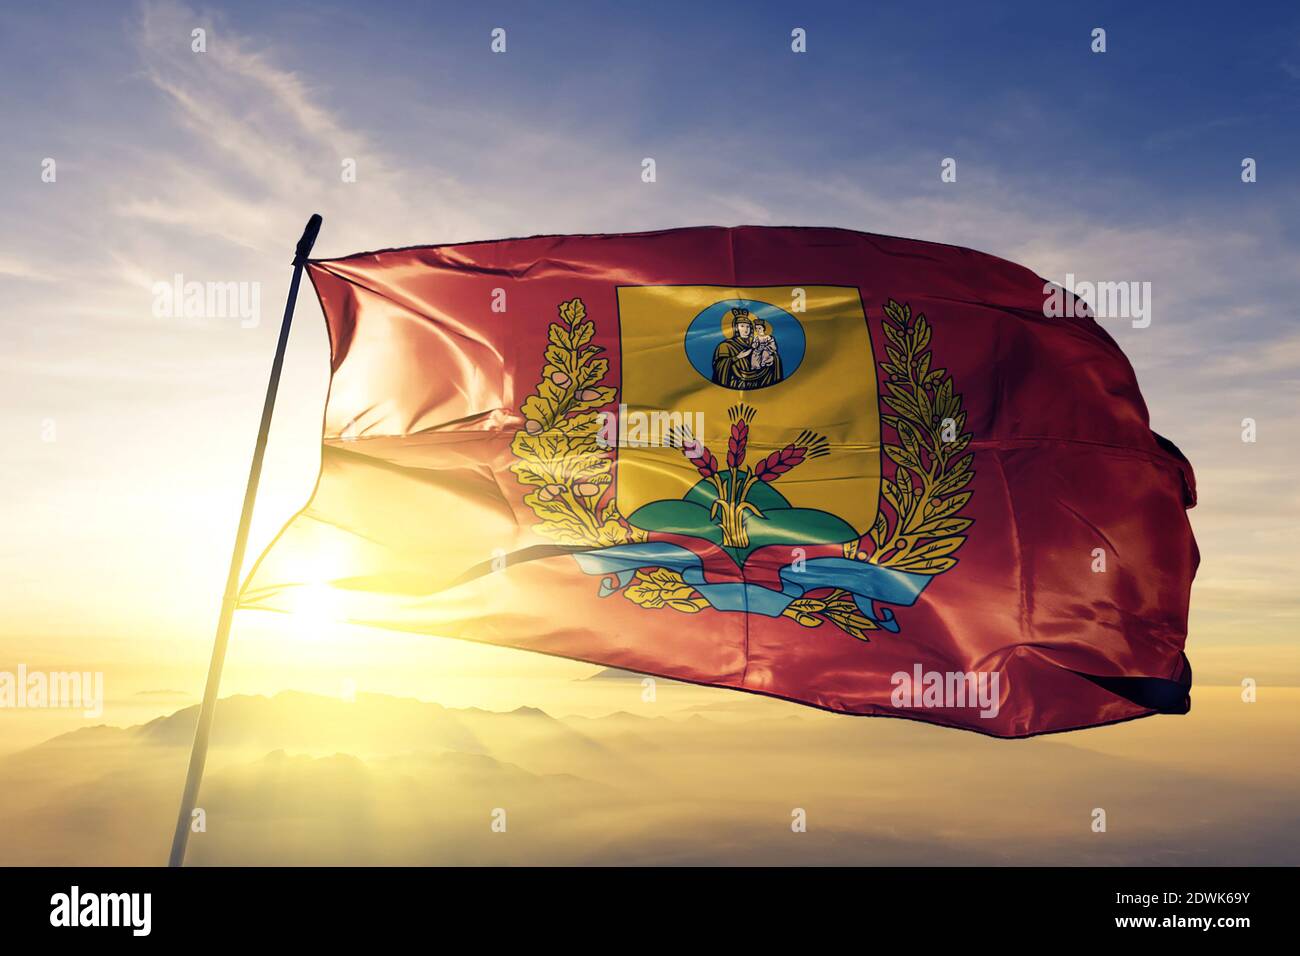 La région de l'oblast de Mahilyow du drapeau biélorusse agite au sommet brume de lever de soleil Banque D'Images